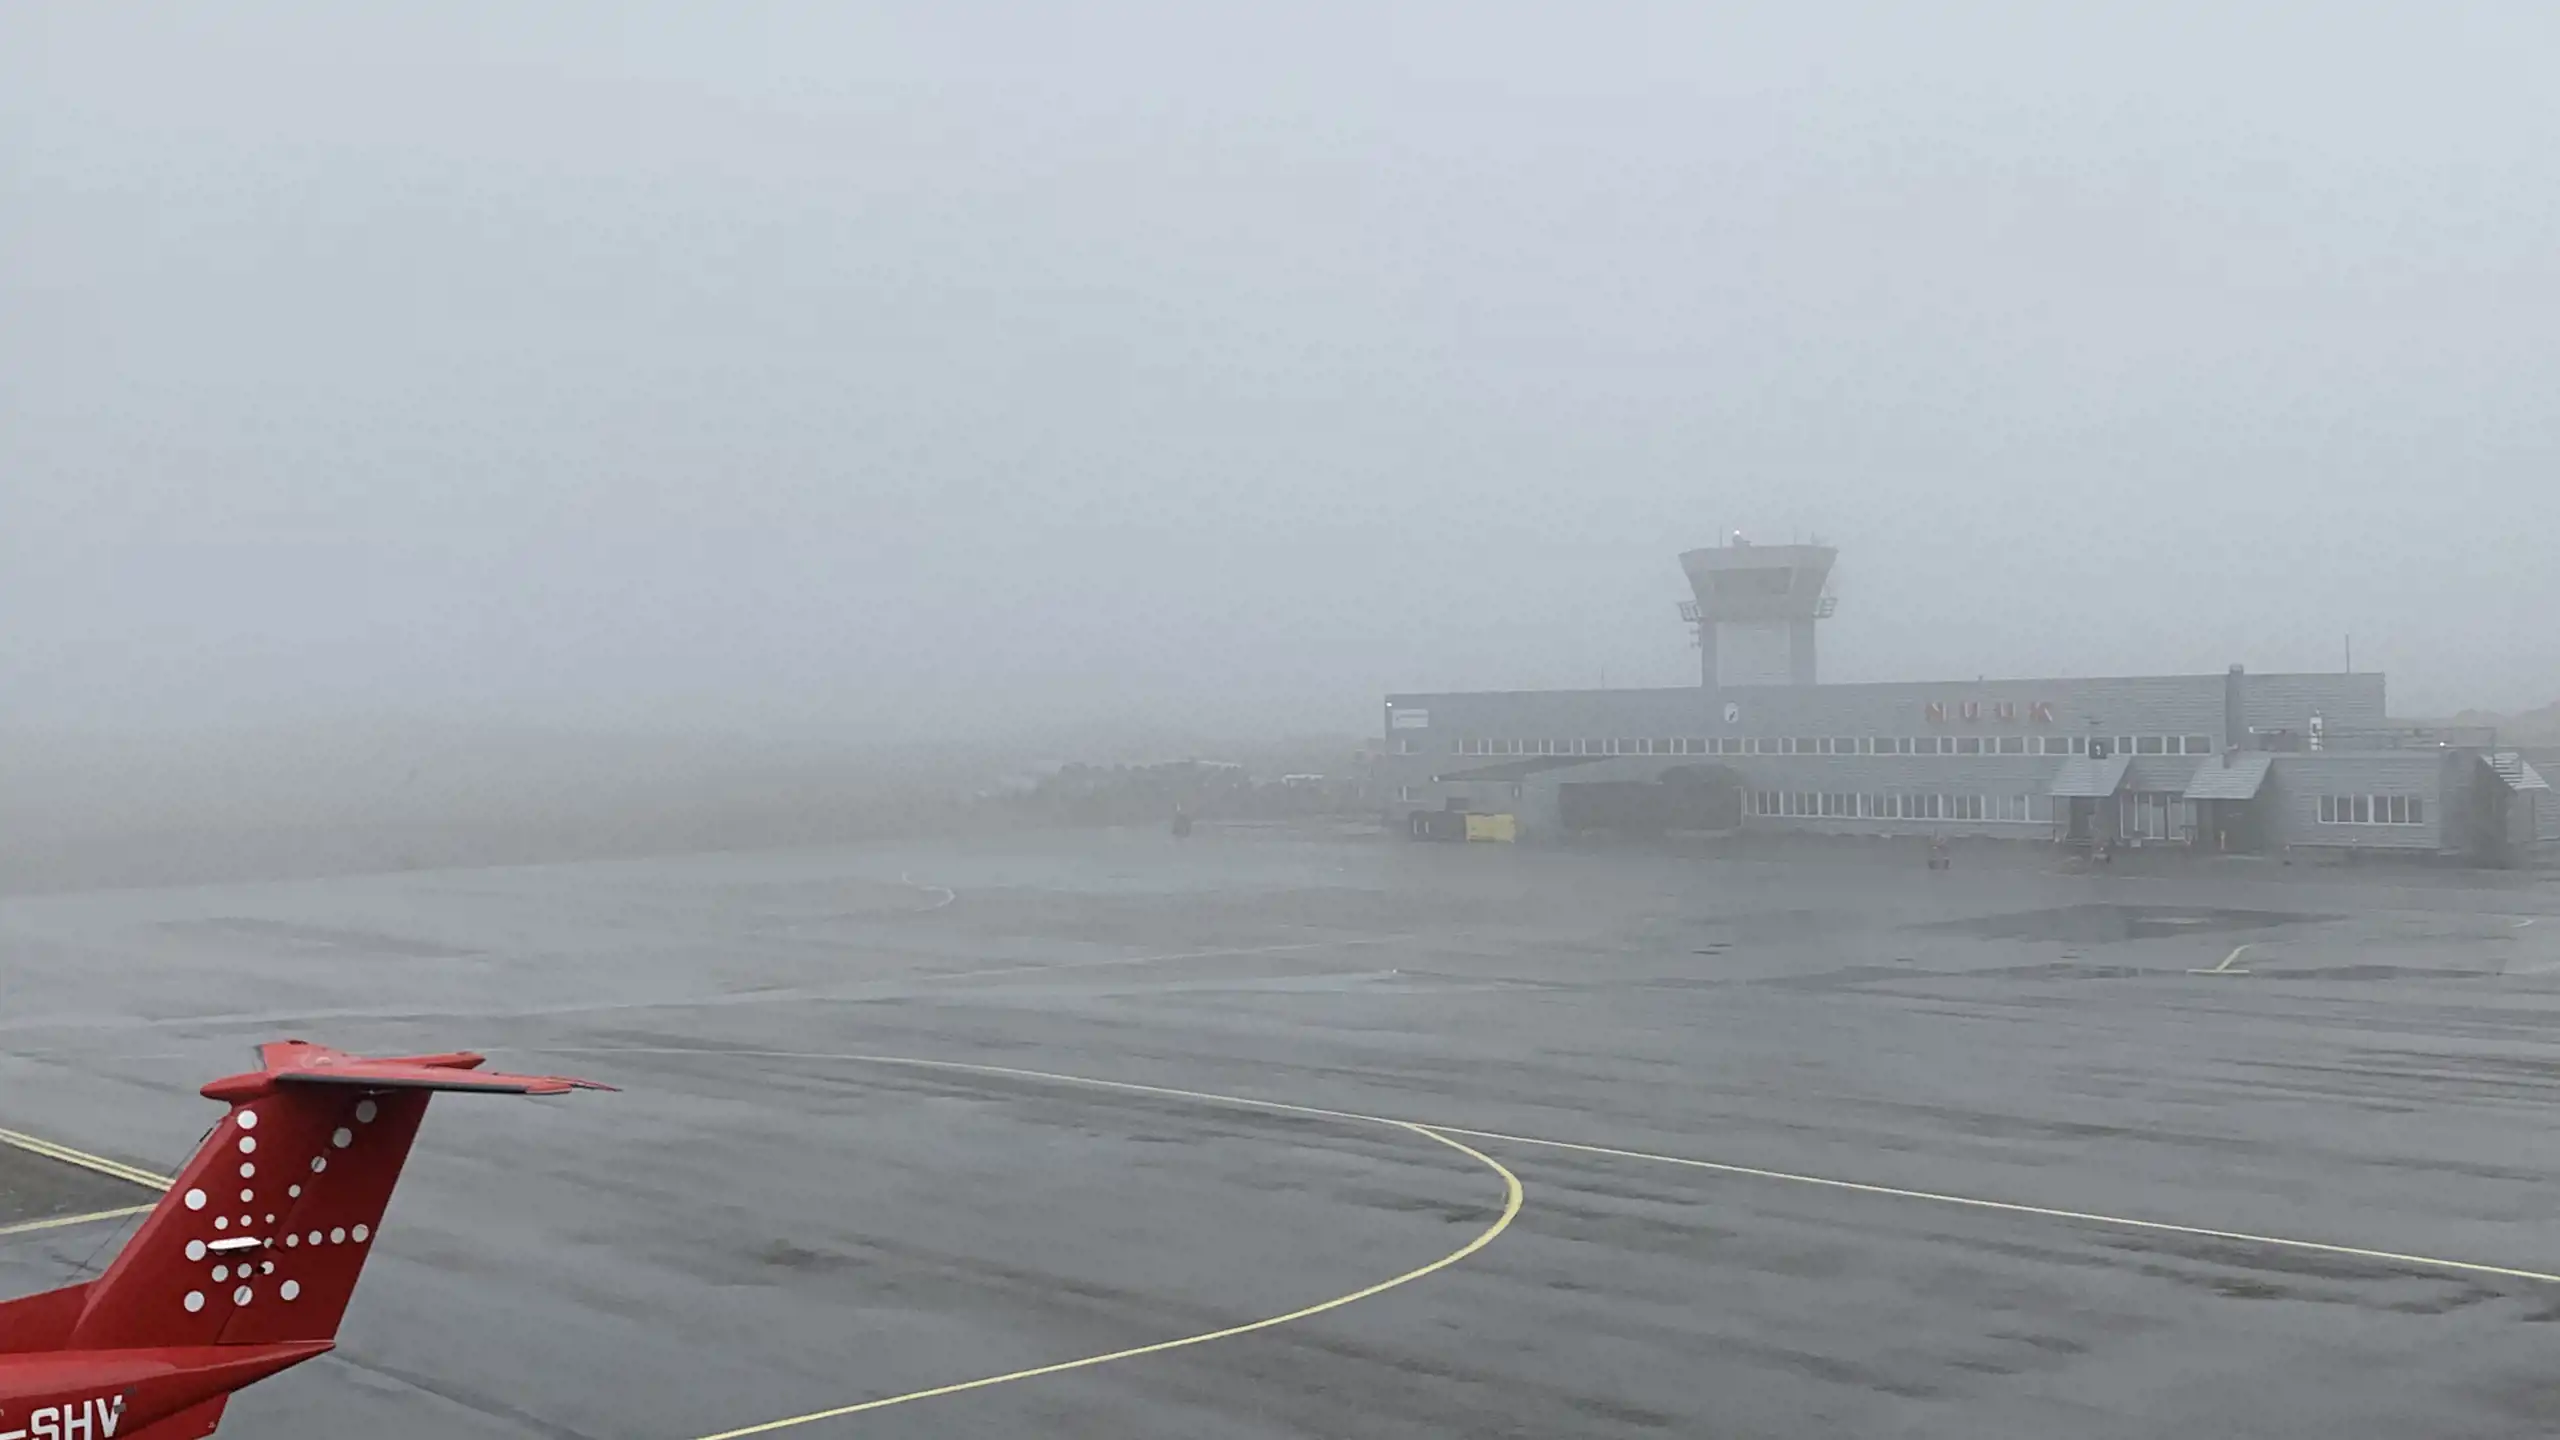 Billede af forpladsen kl. 17.00 taget fra Drifts- og Operationscenteret i Nuuk